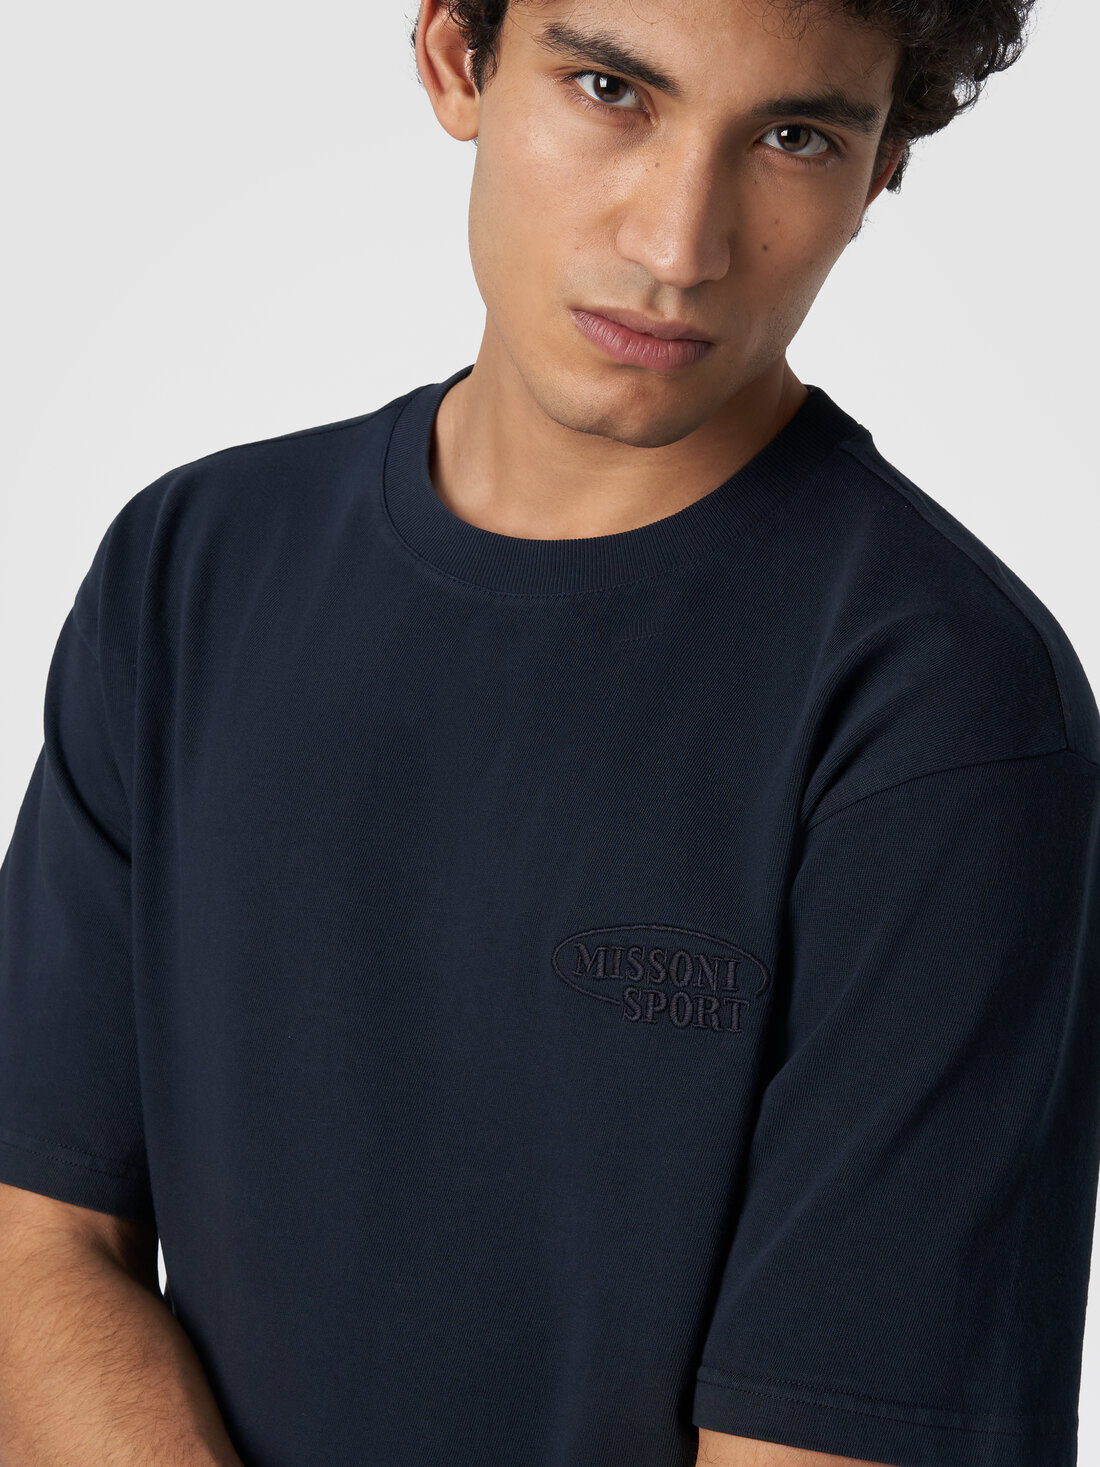 Camiseta de cuello redondo de algodón con logotipo, Azul Marino  - TS24SL00BJ00GYS72EU - 4